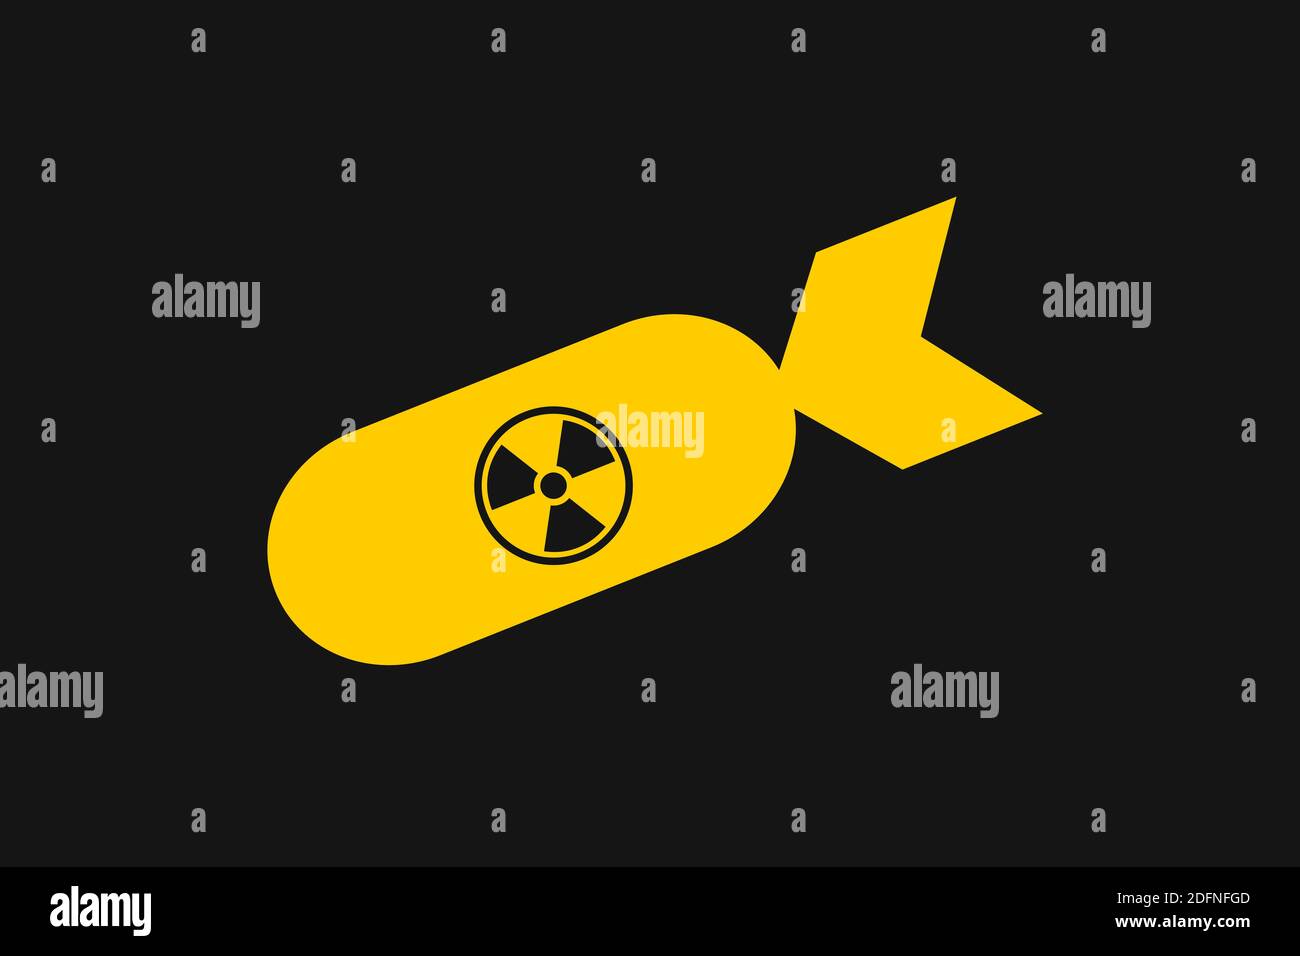 Atom- und Atombombe - Waffe und Exposive der Massenvernichtung. Rakete mit Symbol für Strahlung und Radioaktivität. Vektorgrafik Stockfoto